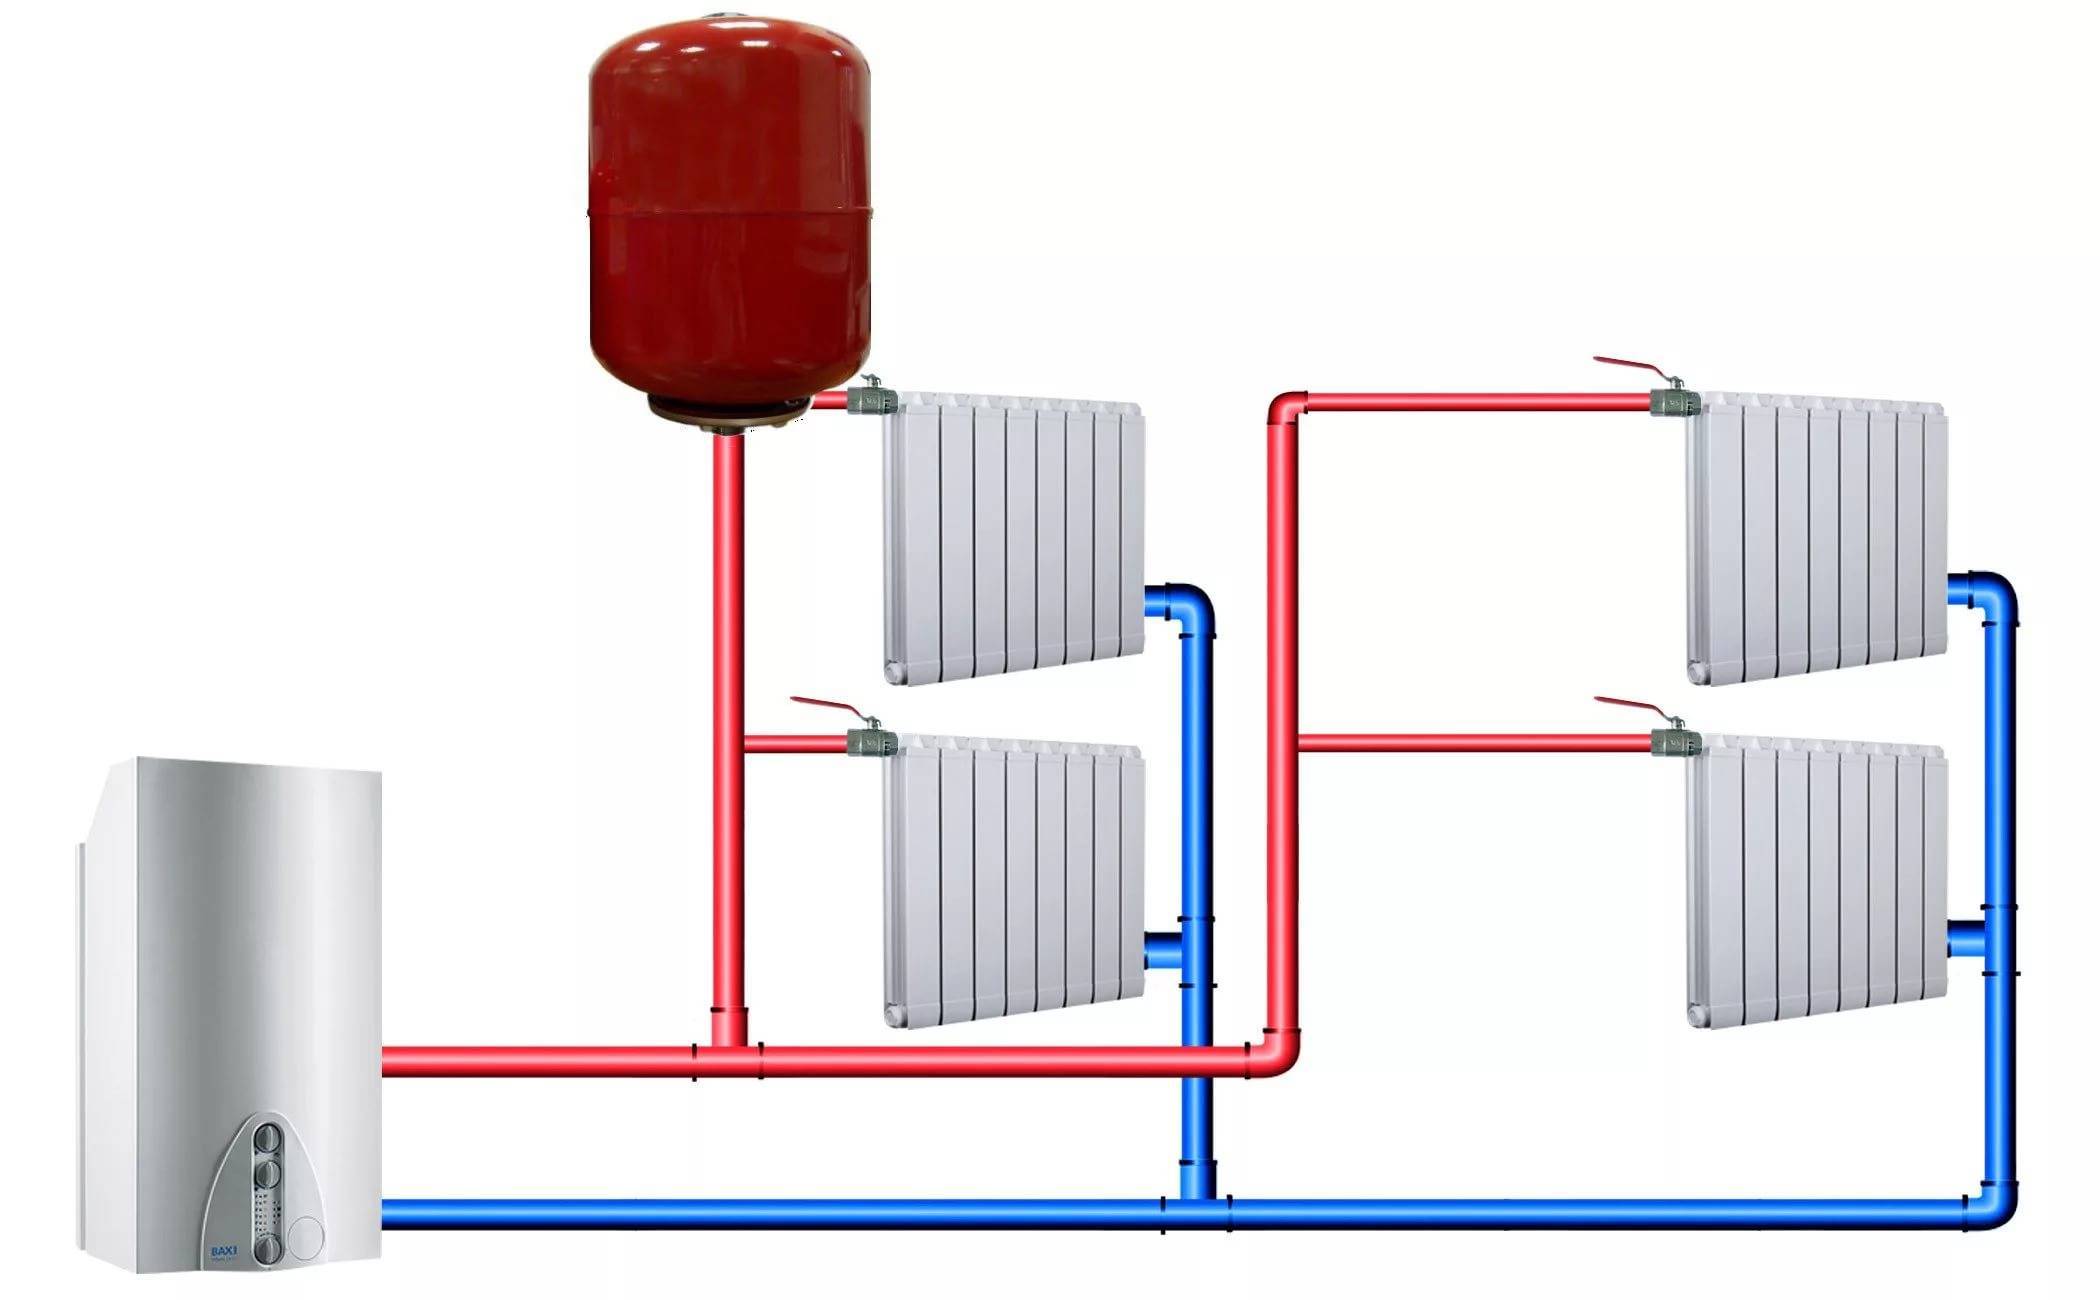 Установка электрического отопления в частном доме — простой способ сэкономить на коммунальных услугах